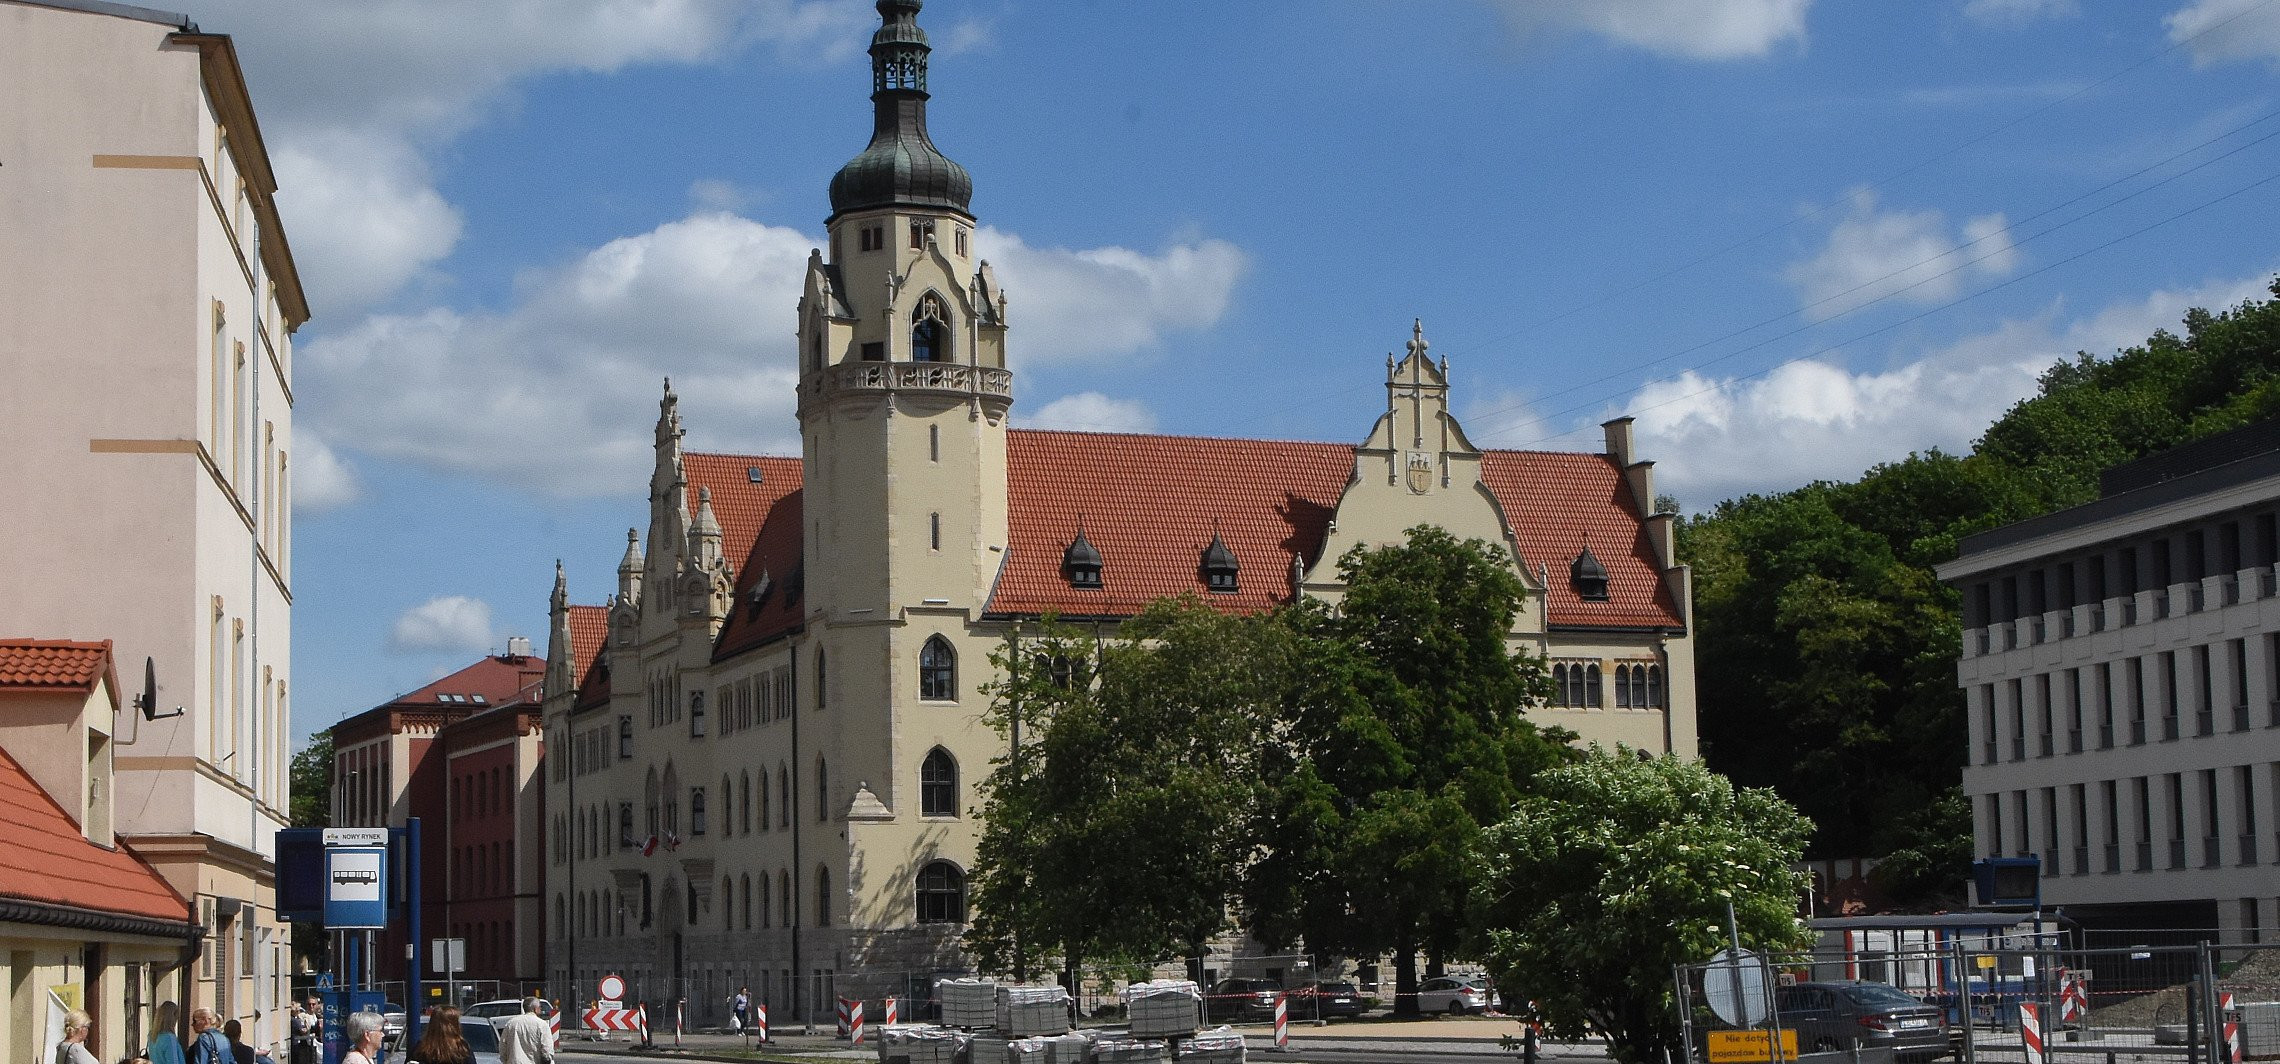 Inowrocław - Sąd zmienia decyzję w sprawie aresztu za znęcanie